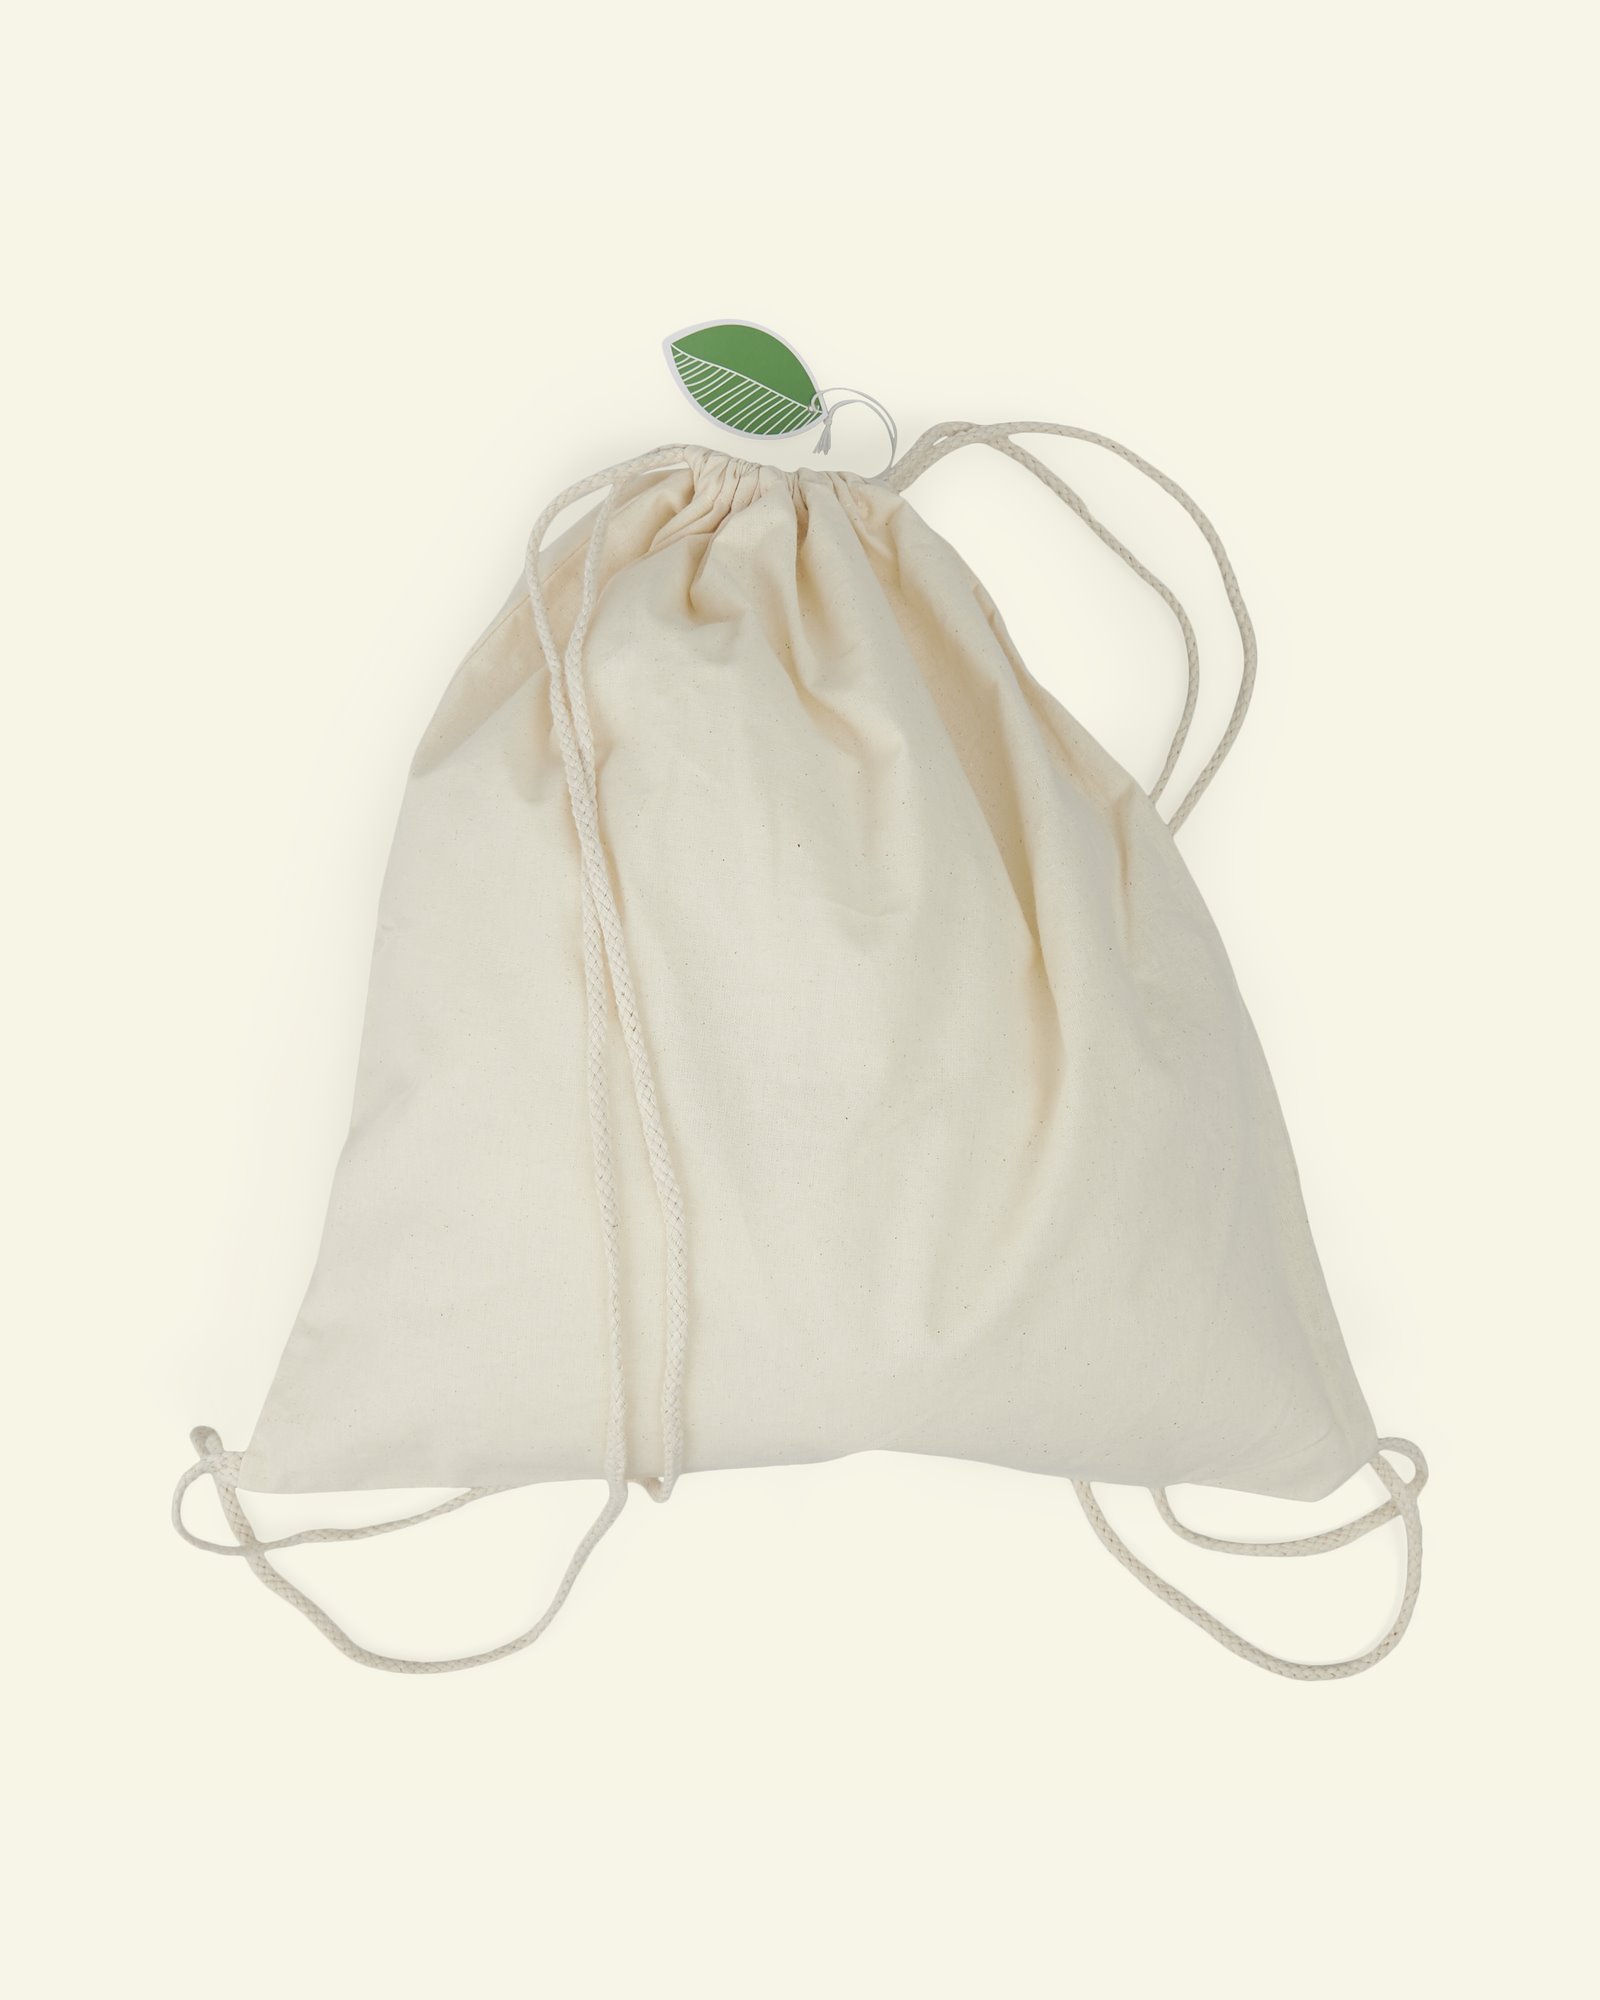 Økologisk Bomulds gymnastikpose, 37*41cm 96821_pack